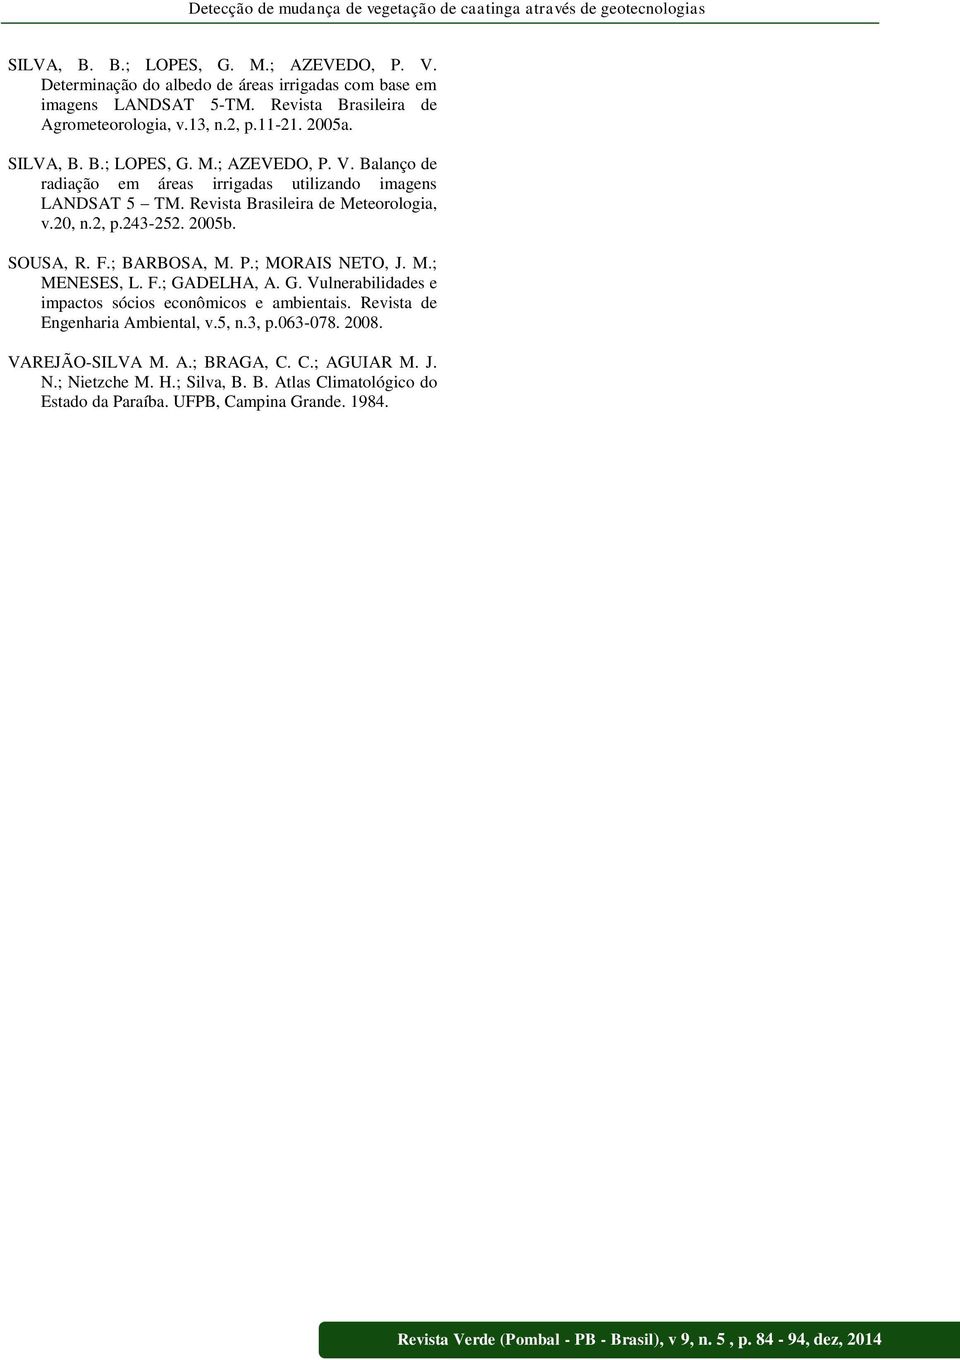 Revista Brasileira de Meteorologia, v.20, n.2, p.243-252. 2005b. SOUSA, R. F.; BARBOSA, M. P.; MORAIS NETO, J. M.; MENESES, L. F.; GADELHA, A. G. Vulnerabilidades e impactos sócios econômicos e ambientais.